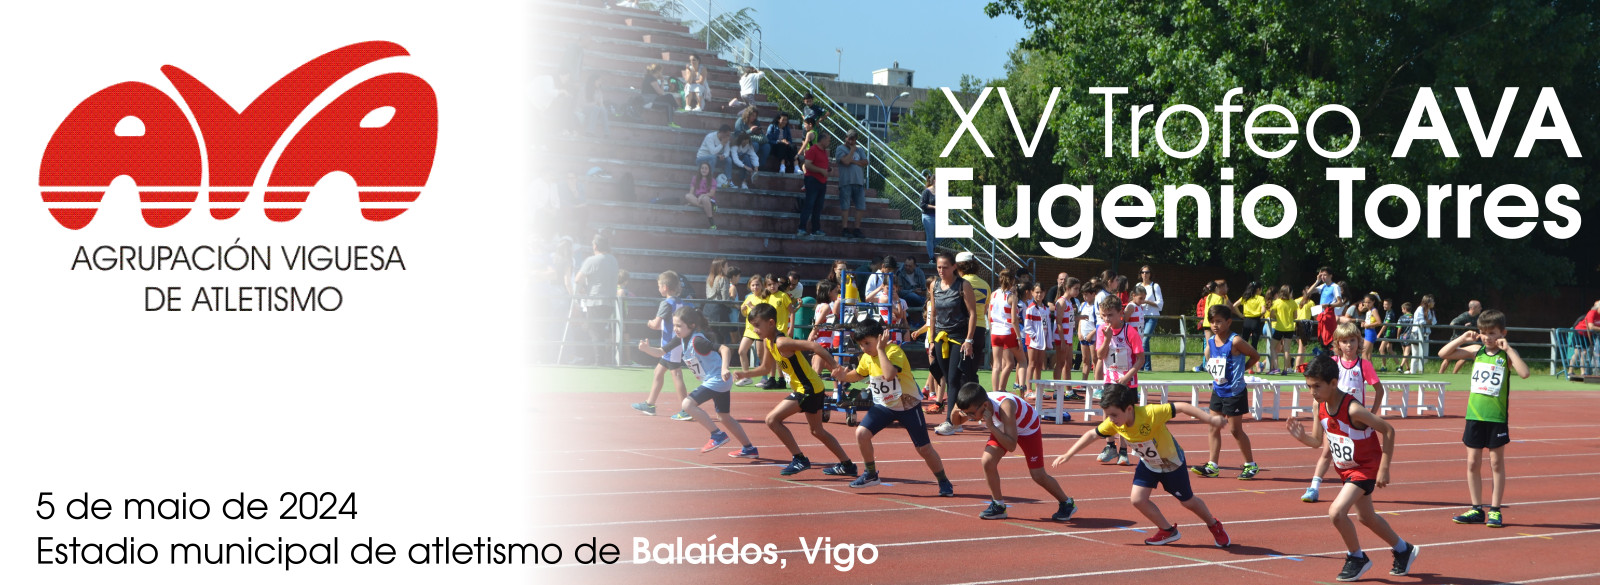  XV Trofeo AVA - Eugenio Torres.  Estadio municipal de atletismo de Balaídos, 5 maio 2024